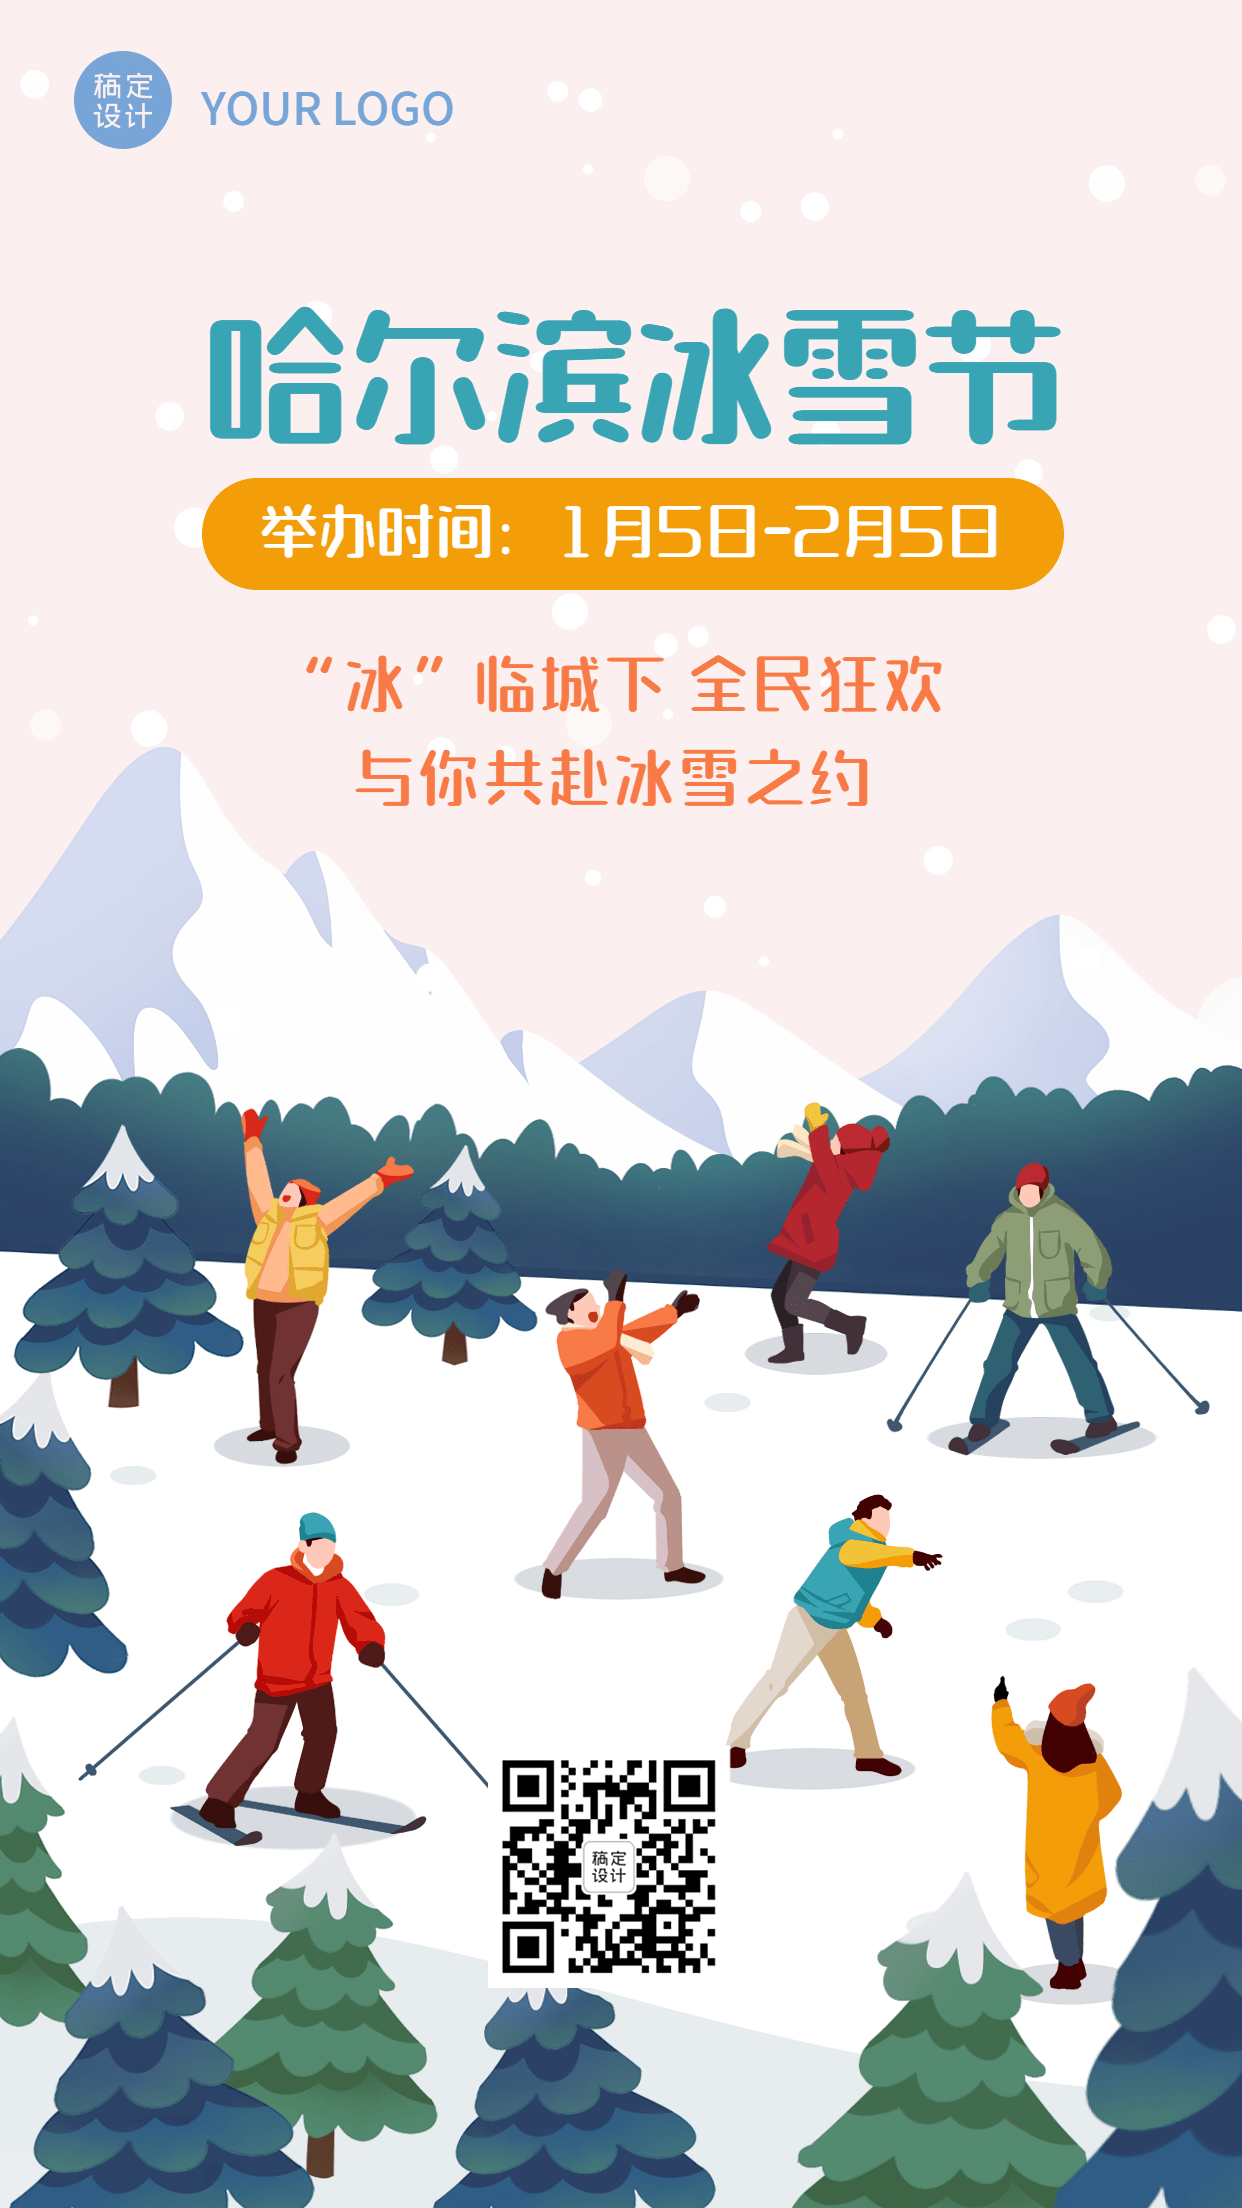 冬季哈尔滨国际冰雪节活动宣传手绘海报预览效果